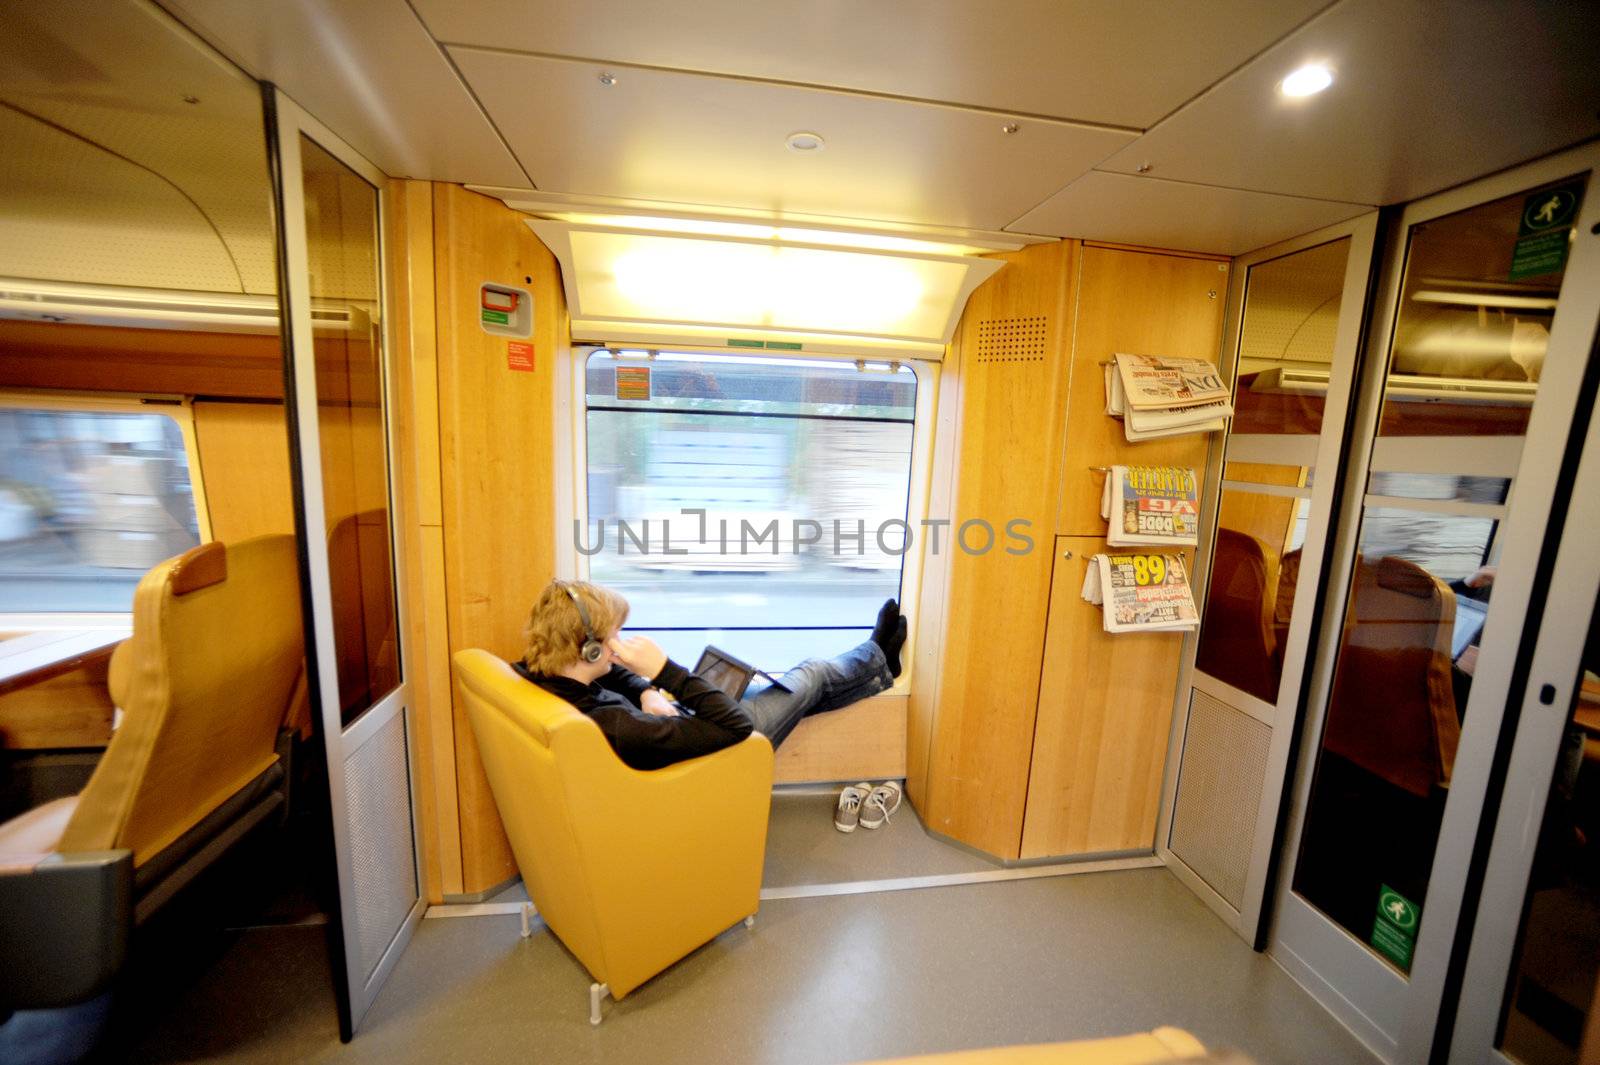 yang man sits in the Norwegian train